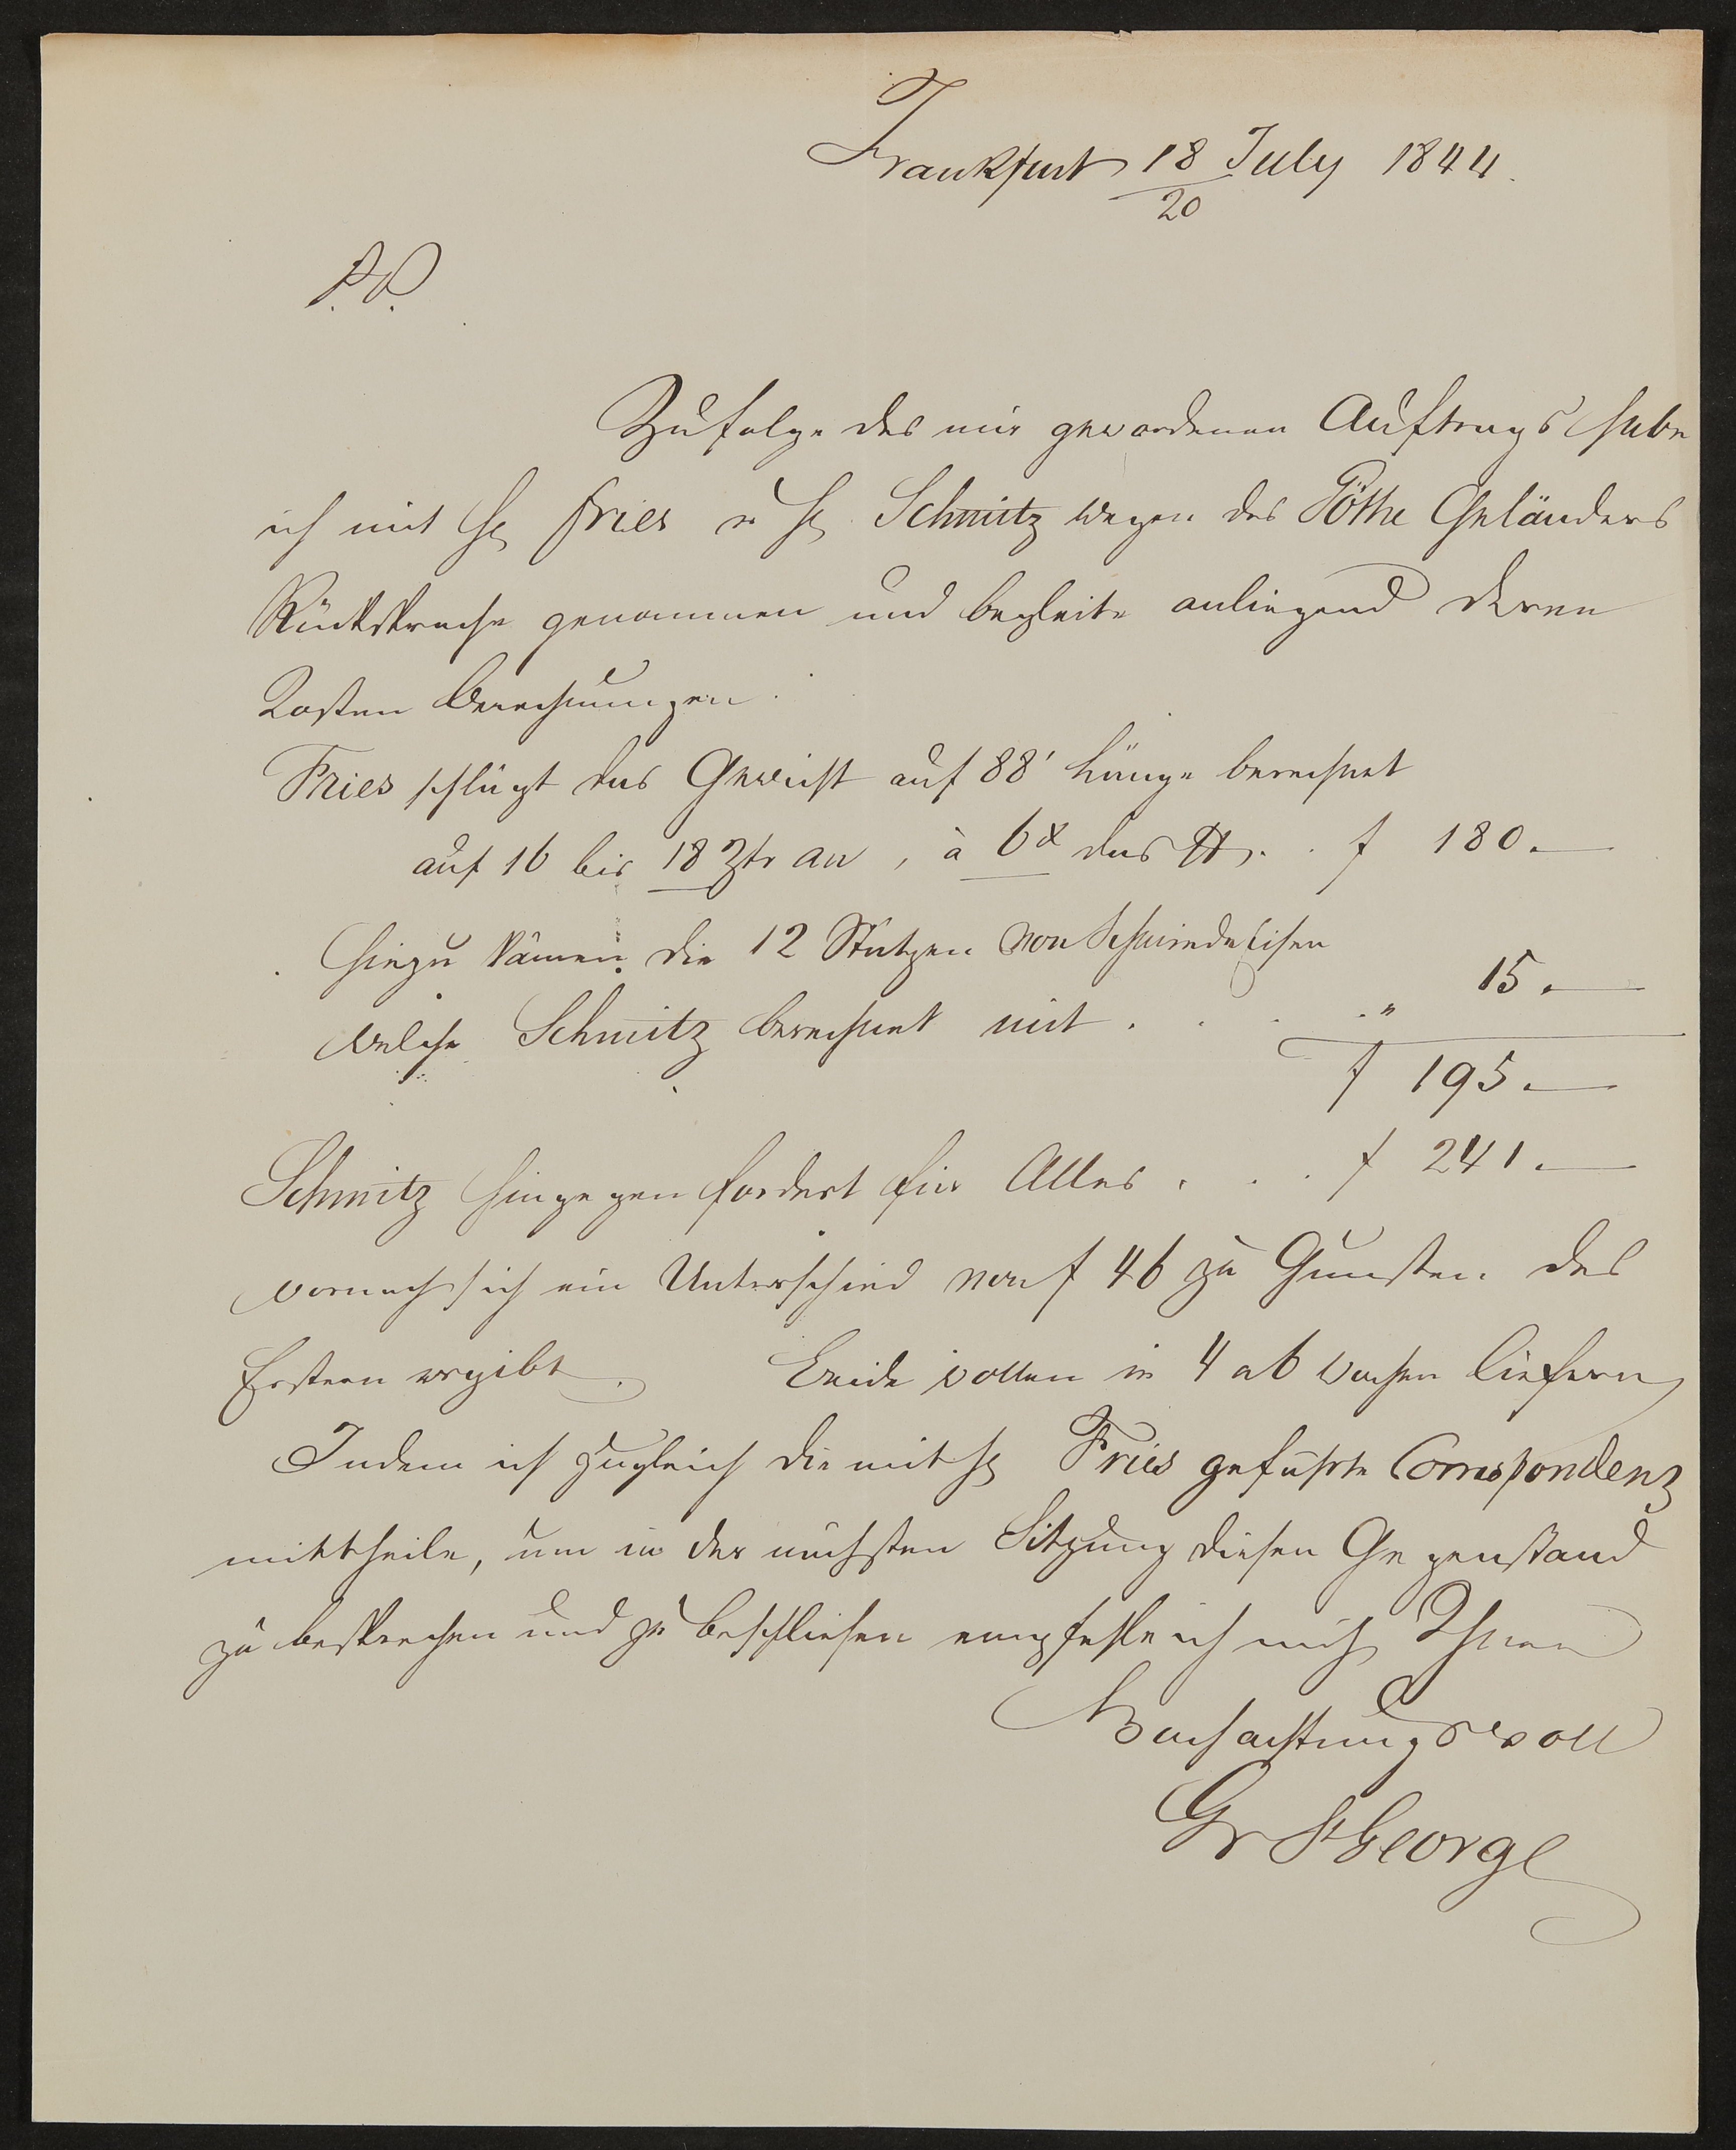 Brief von Georg von St. George ohne Adressatenangabe vom 18./20.07.1844 (Freies Deutsches Hochstift / Frankfurter Goethe-Museum Public Domain Mark)